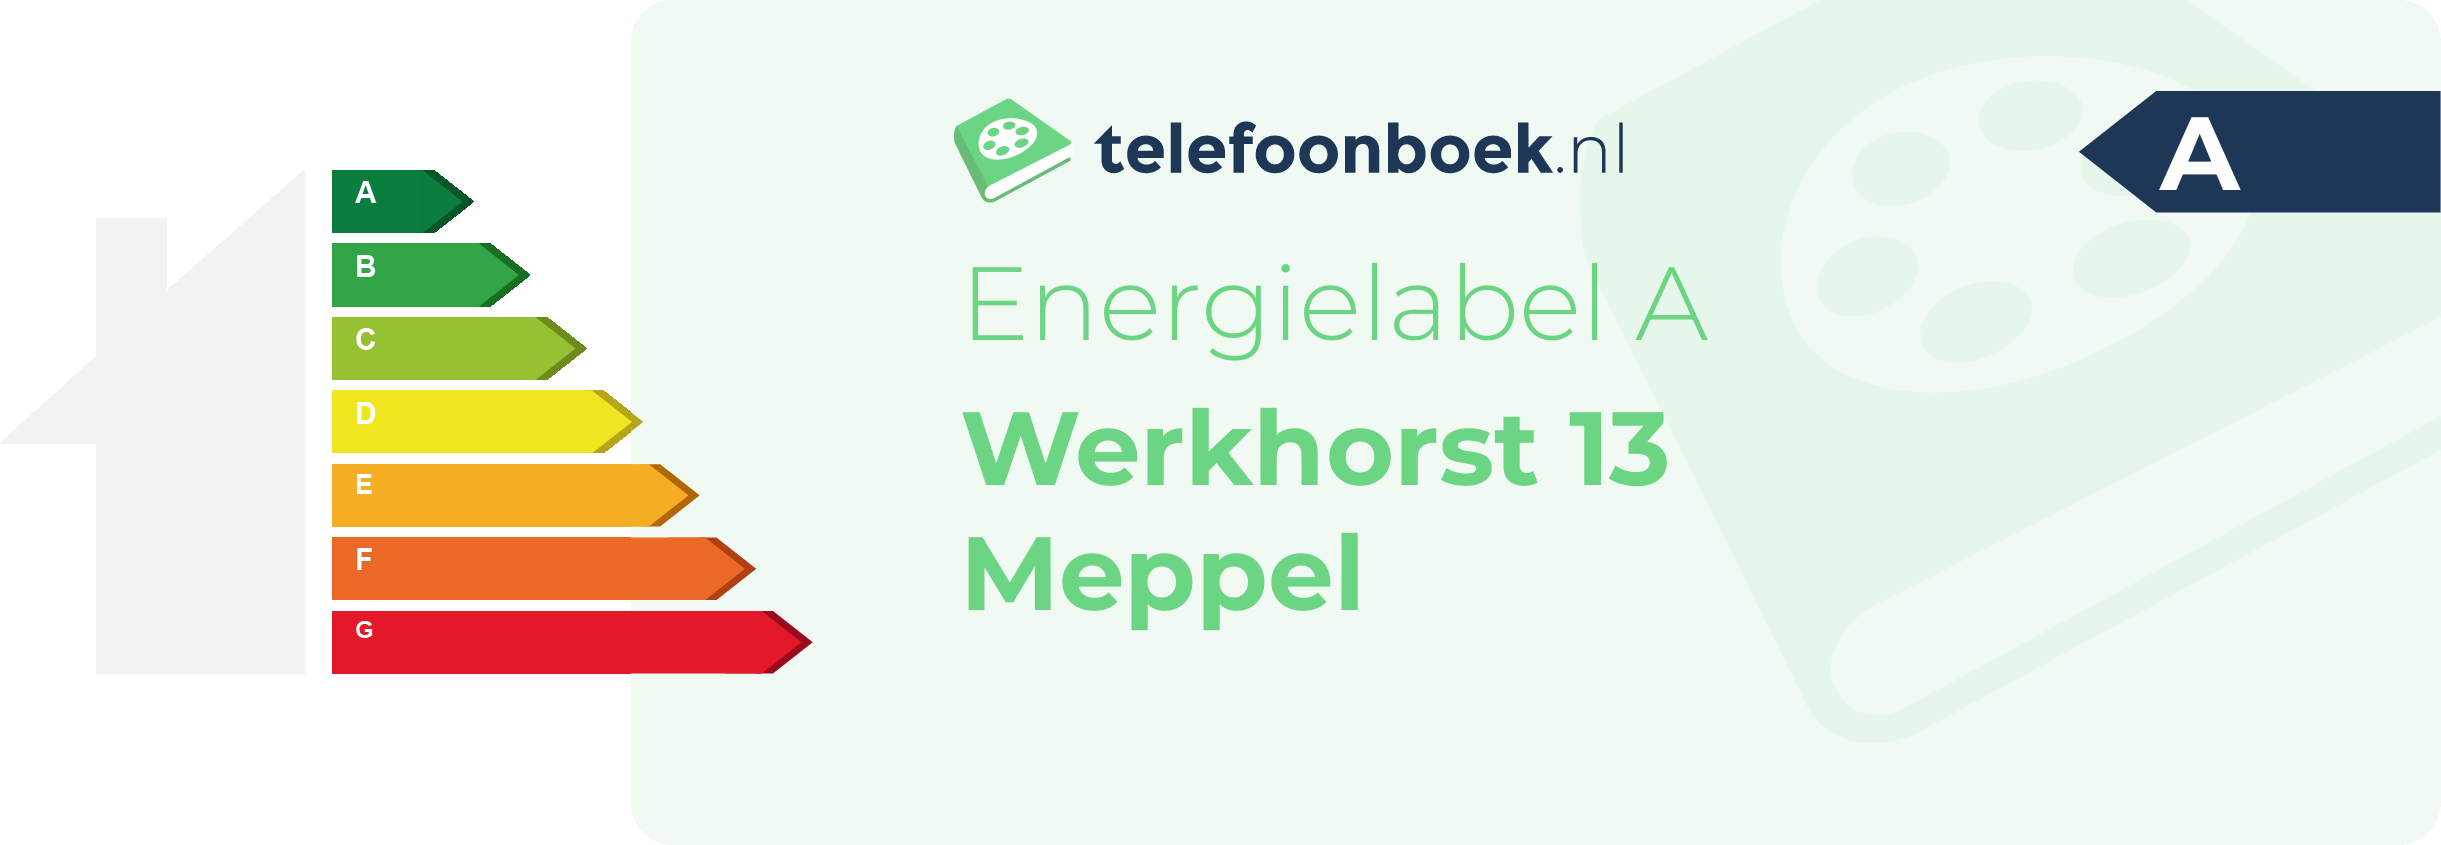 Energielabel Werkhorst 13 Meppel